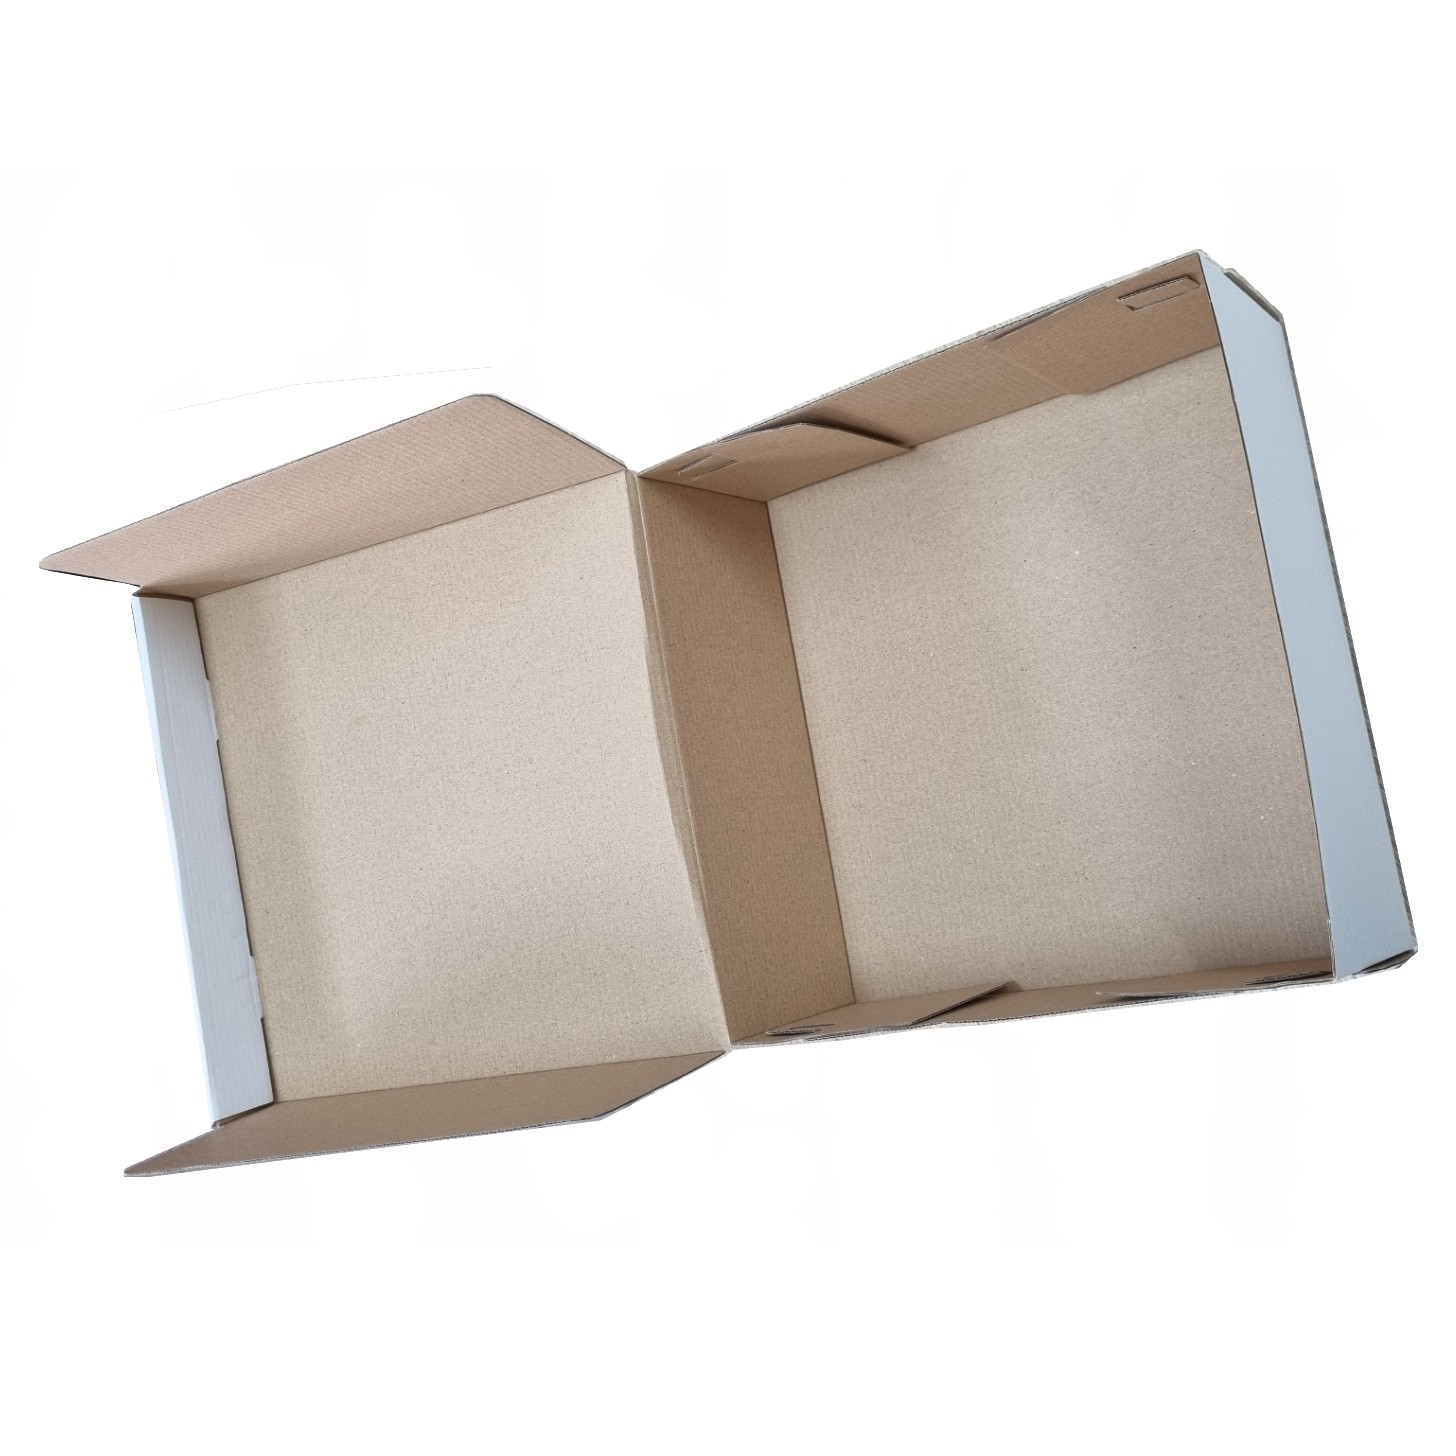 Krabica na zákusky biela 25x25x10 cm, VL